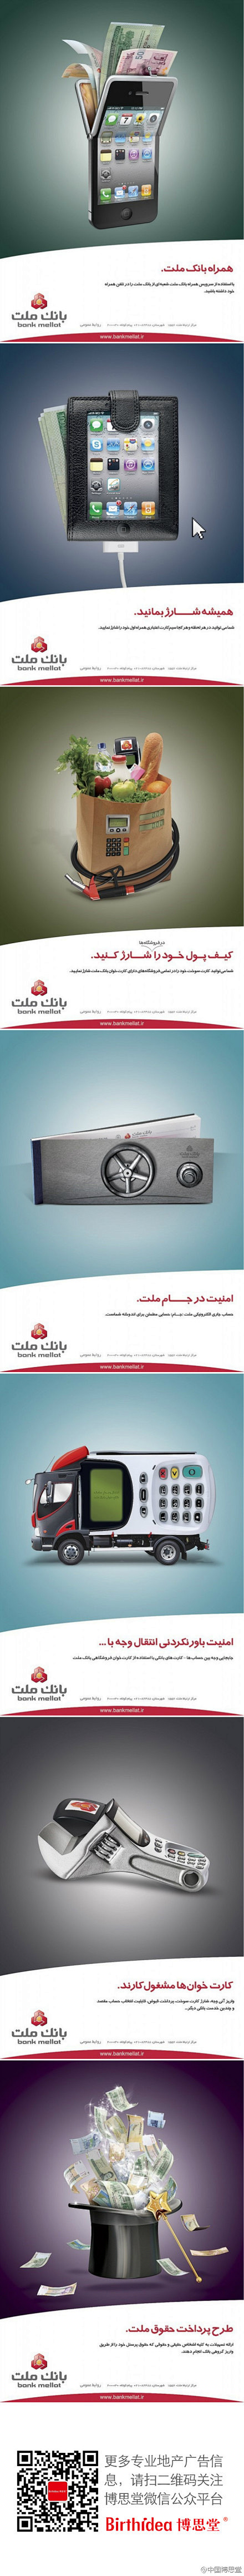 #博思分享# 来自伊朗一家银行的广告创意...